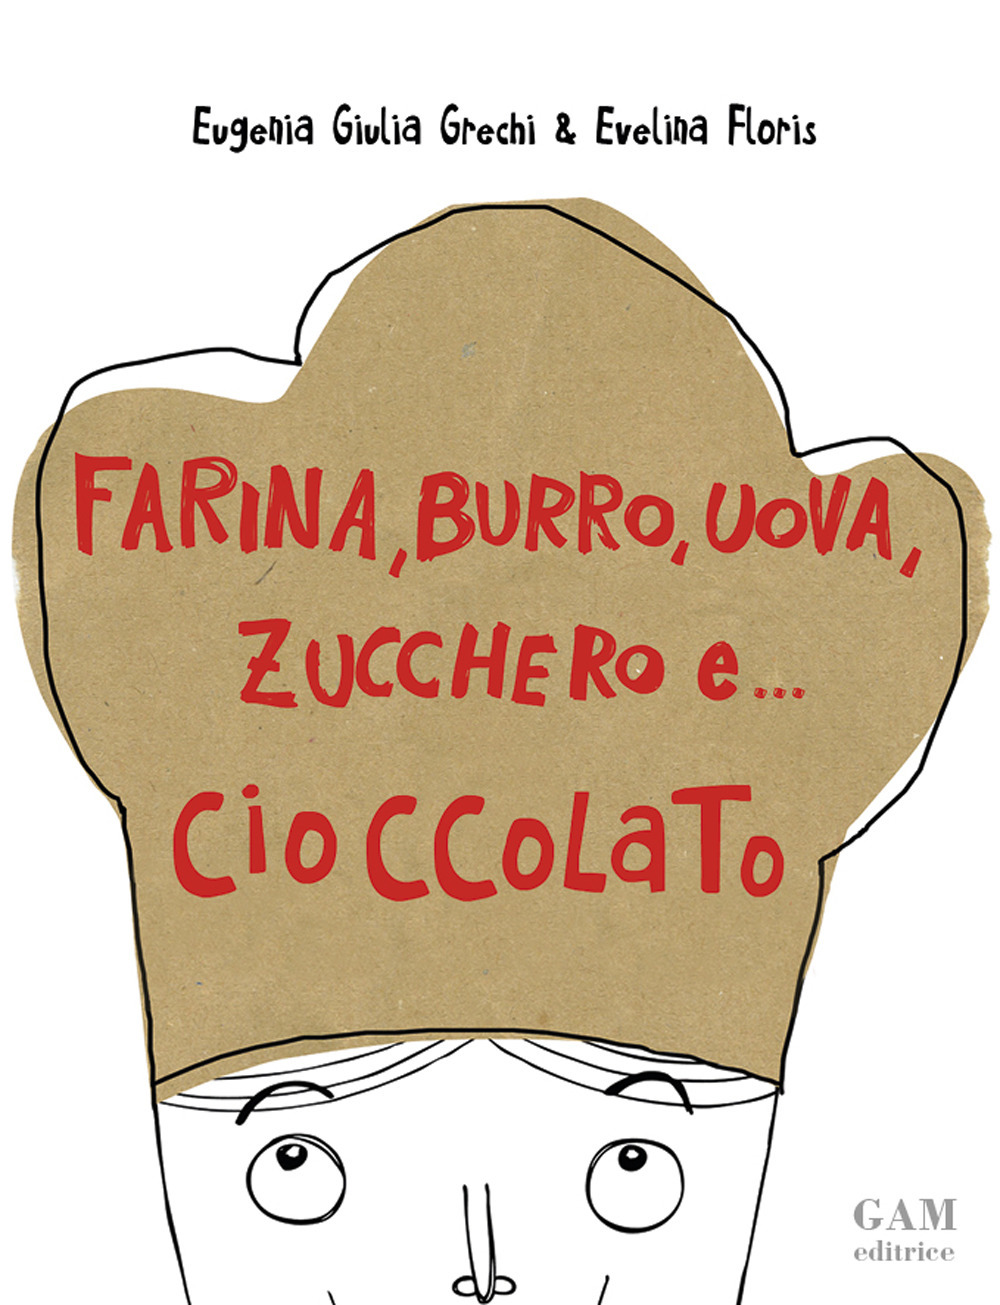 Image of Farina, burro, uova, zucchero e... cioccolato